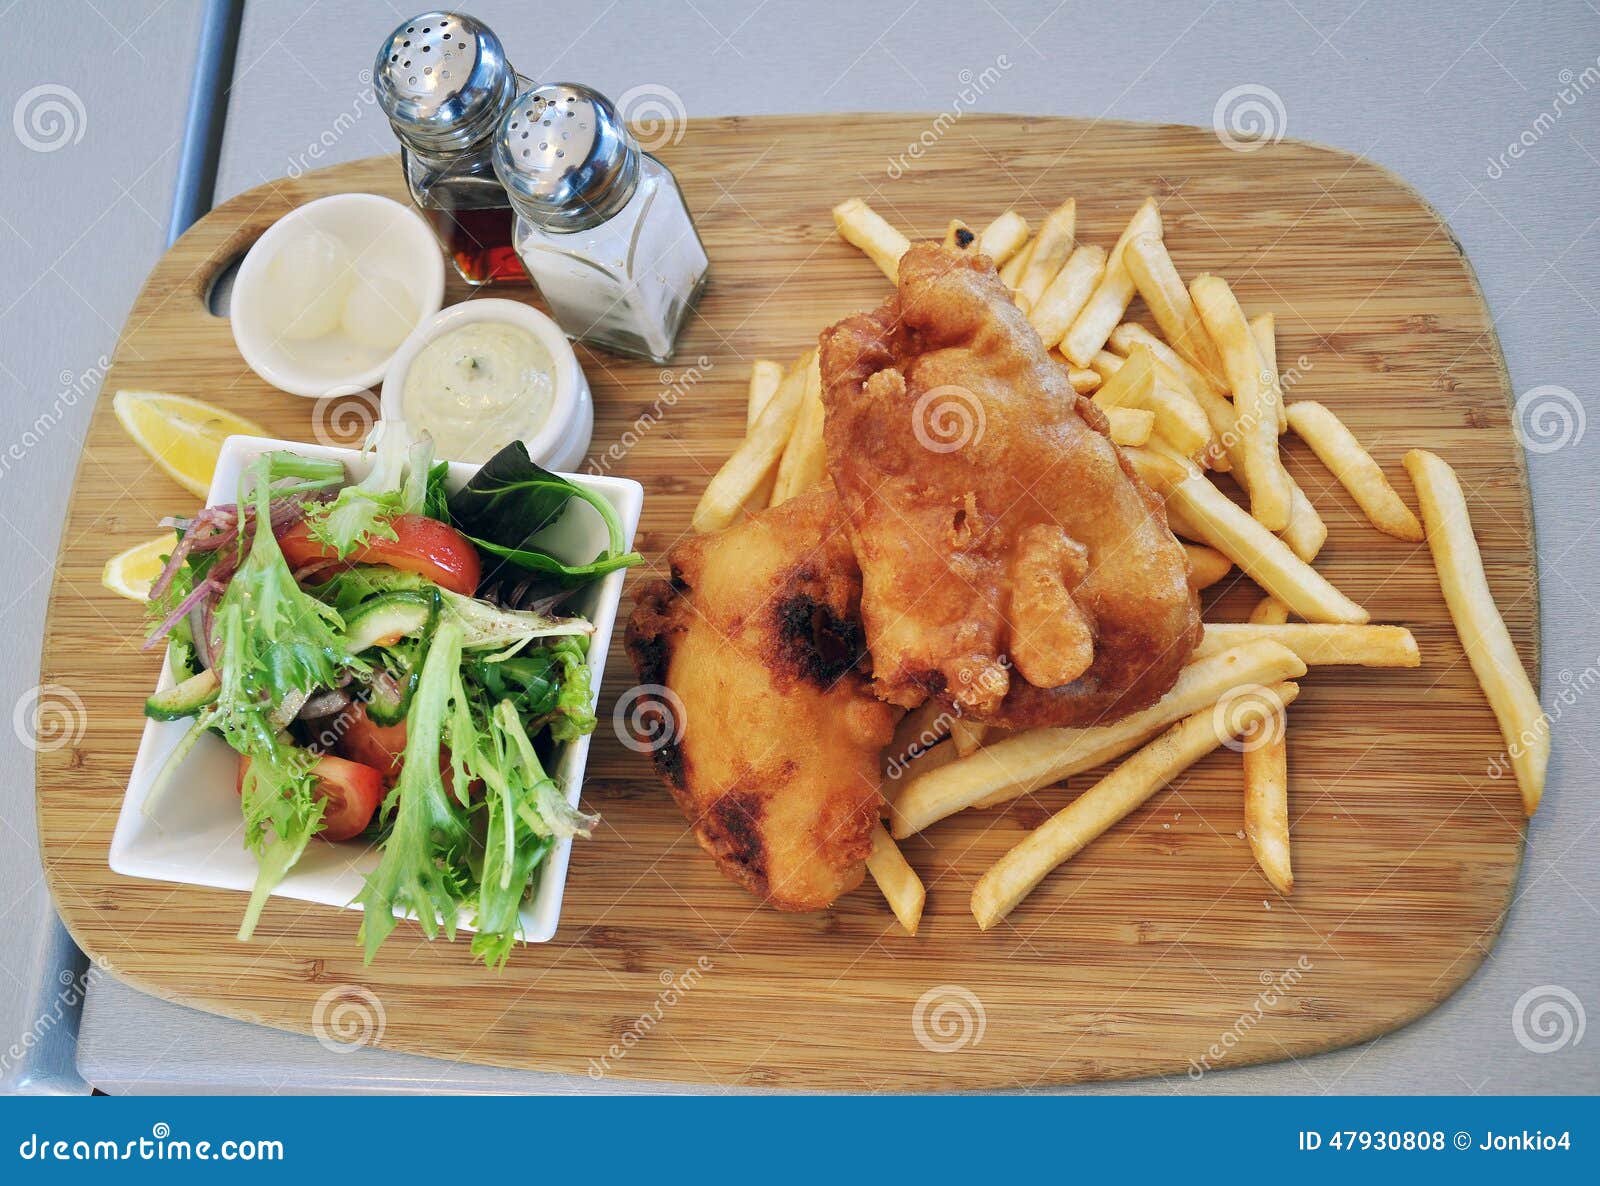 βρετανικός επιτραπέζιος παραδοσιακός ξύλινος πρόχειρων φαγητών ψαριών τσιπ. Ψάρια και τσιπ που εξυπηρετούνται με τη σάλτσα και τα λαχανικά ταρτάρου